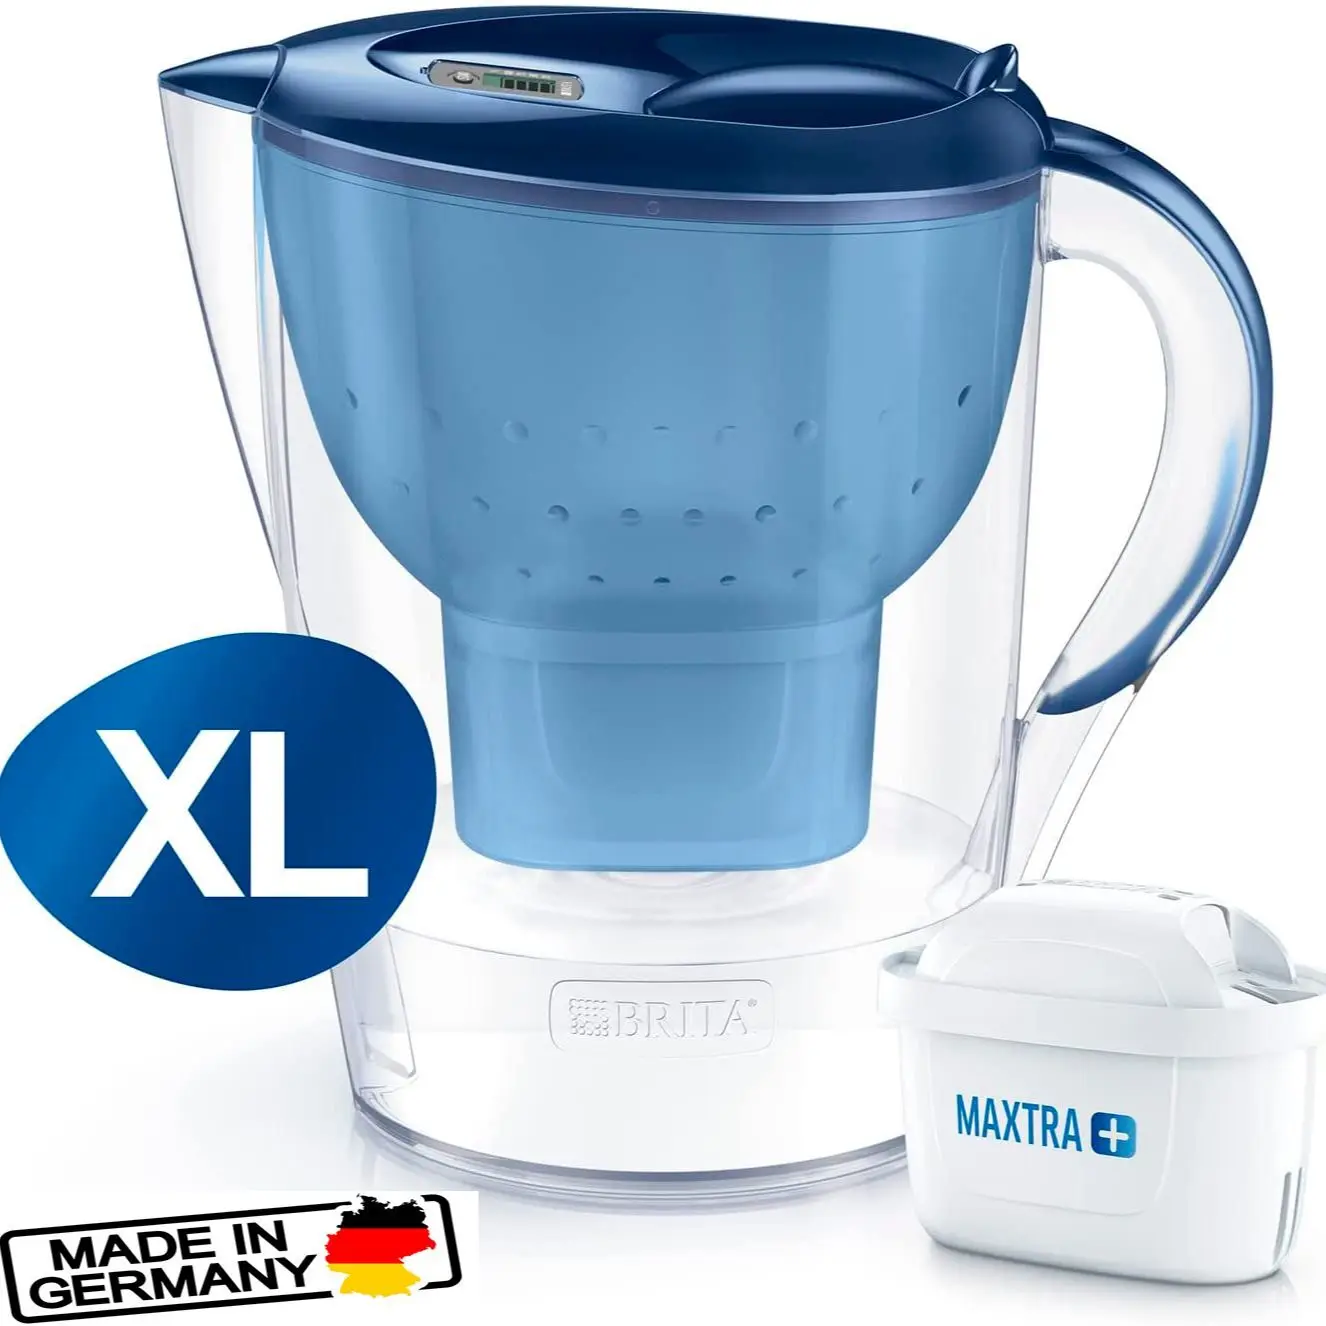 

Brita Marella XL Blau Water Jug Filter 3.5L Size Blue Pitcher Water Filters